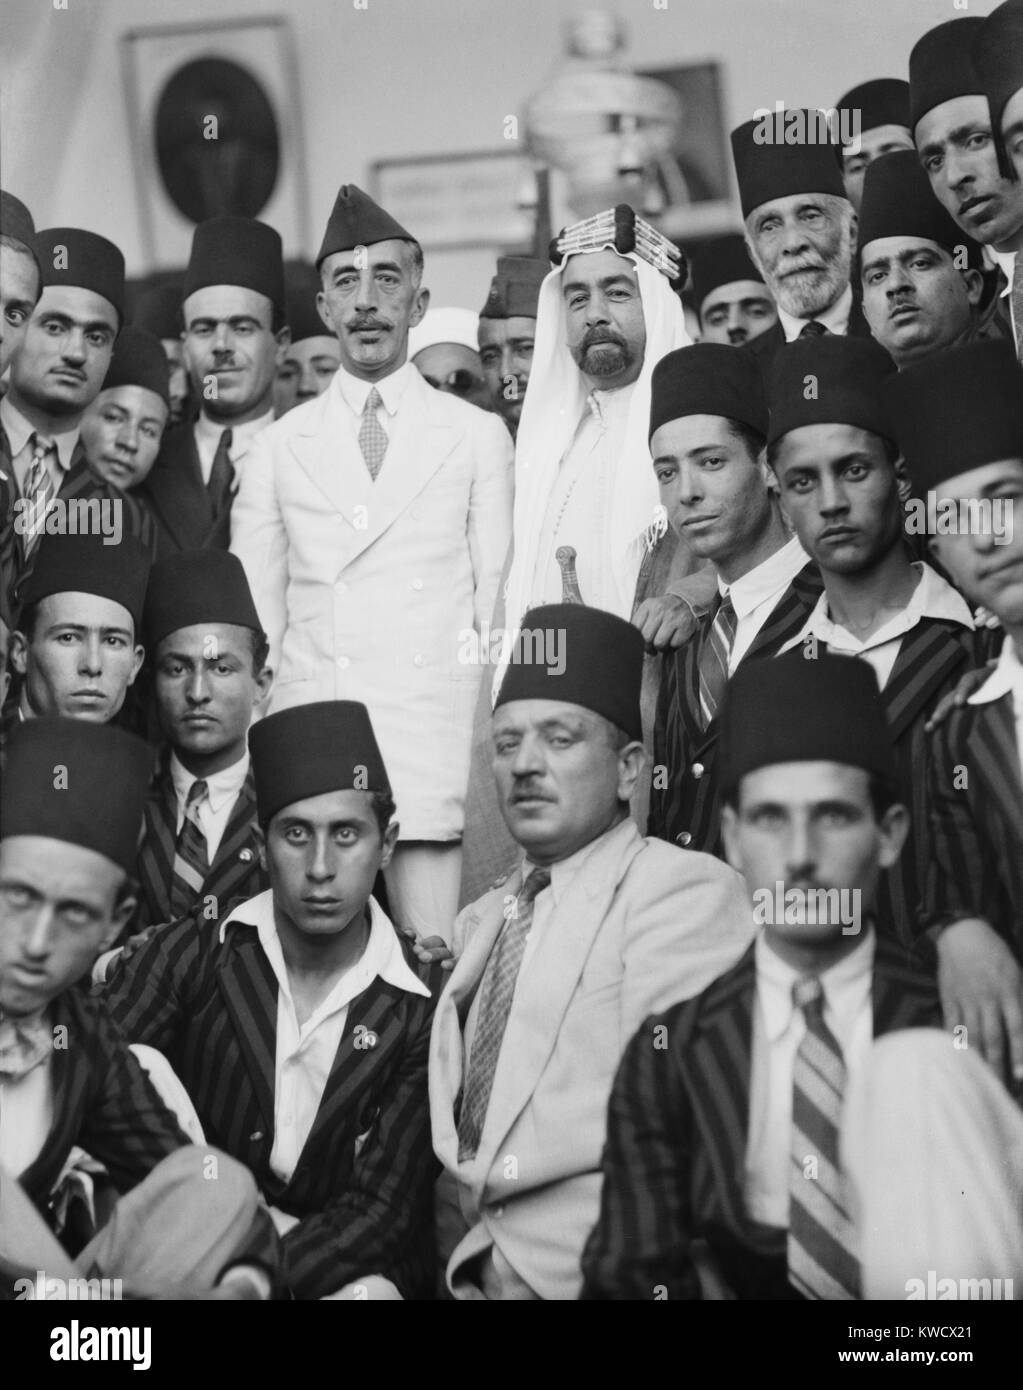 Feisal dell Iraq e l'emiro Abdullah di Giordania, righelli di terre separato dall'Impero Ottomano. Nel 1933, i fratelli erano circondati da studenti vicino alla Cupola della roccia nel corso di una visita a Gerusalemme (BSLOC 2017 1 97) Foto Stock